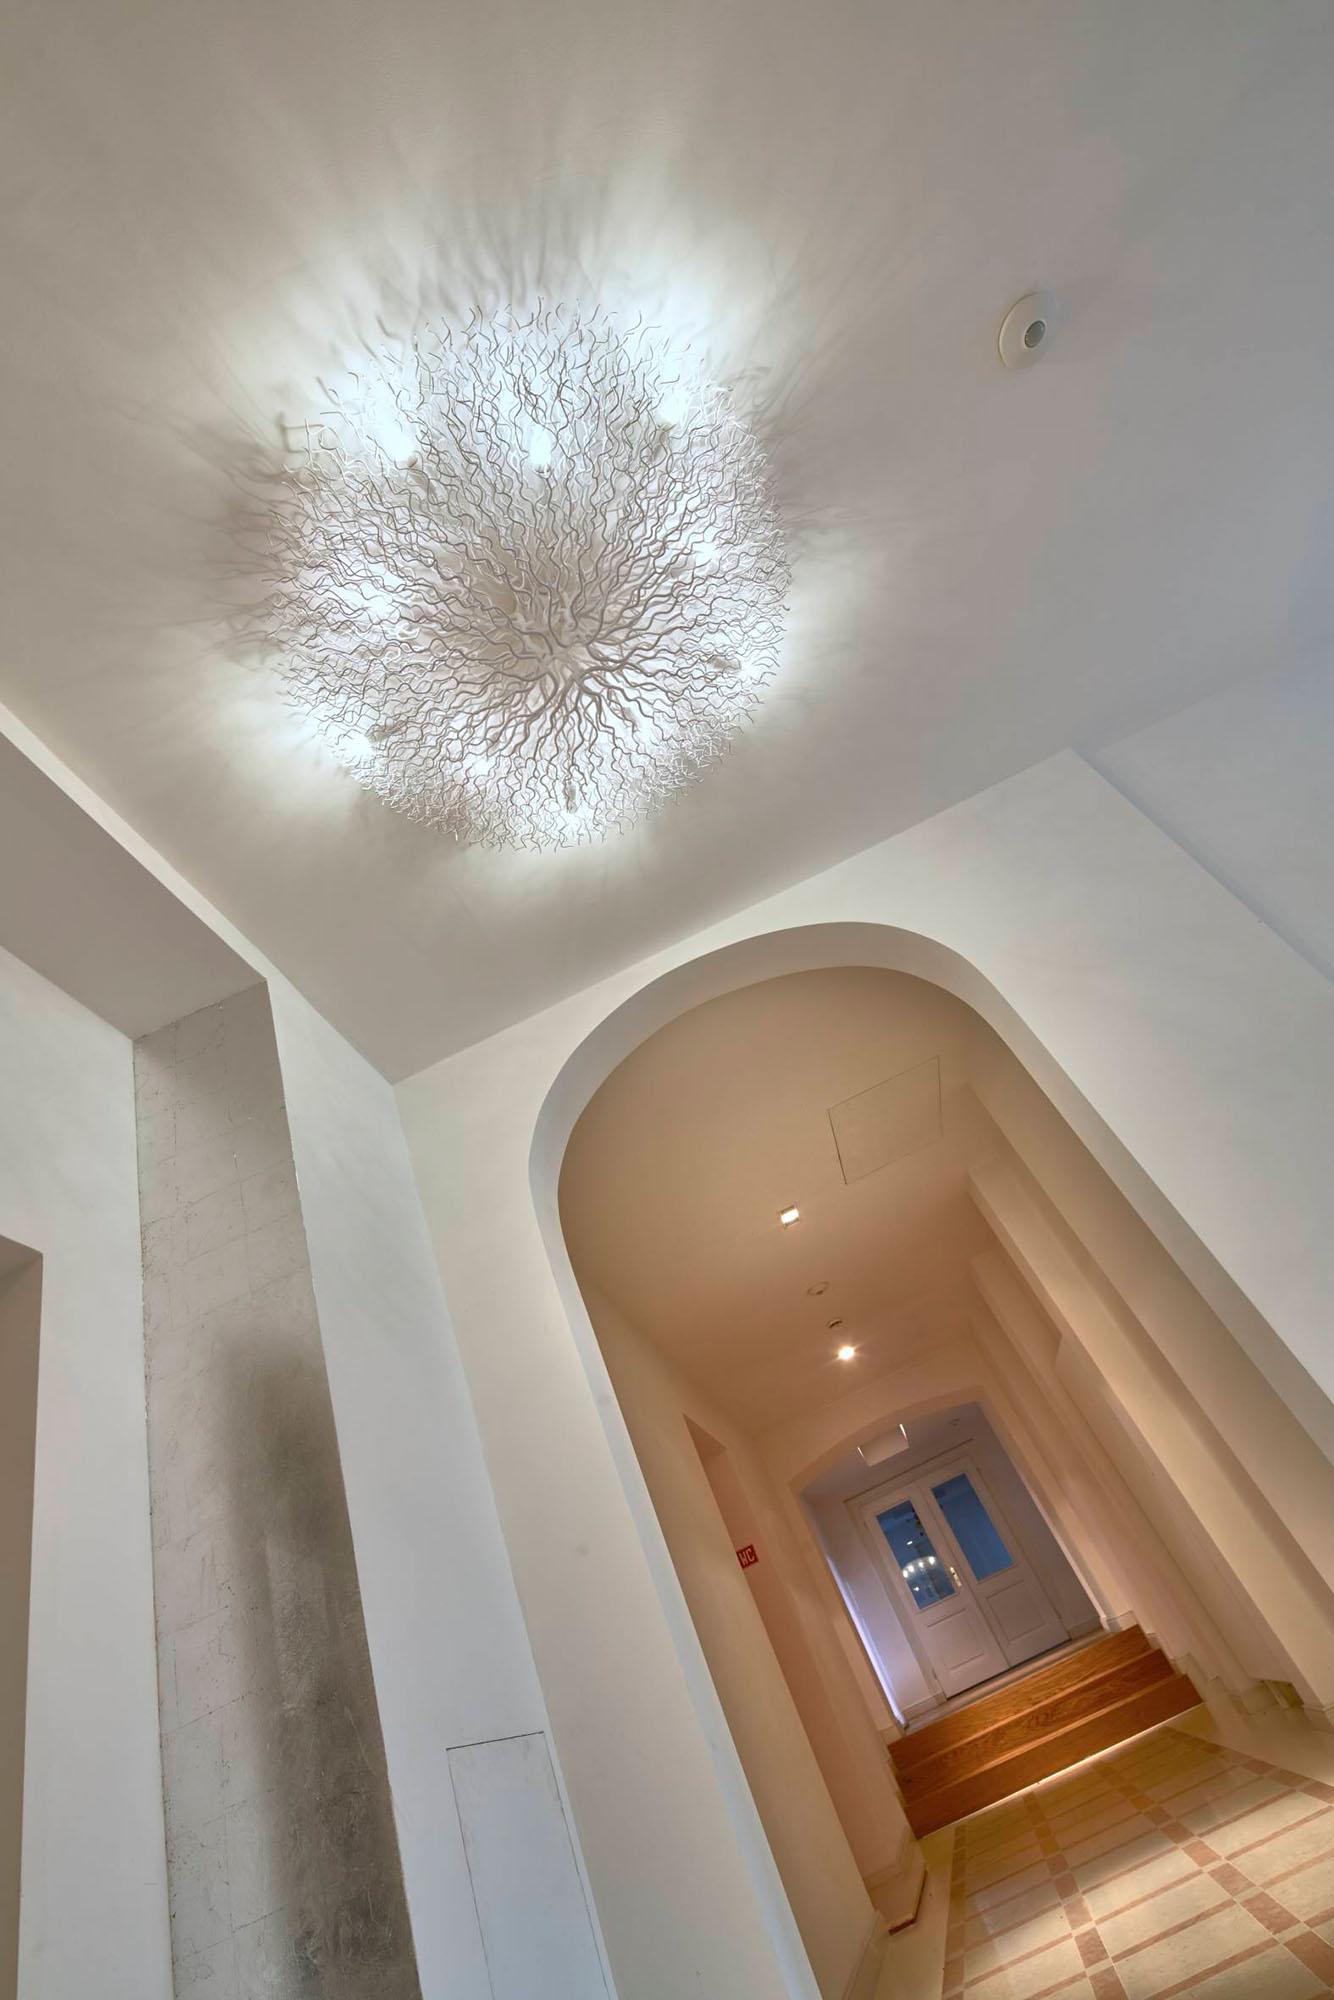 Stilvoll eingerichtetes, modernes Zimmer in einem Hotel - Luxuriöses Interior Design für entspannende Aufenthalte - GROSSMANN INTERIORS